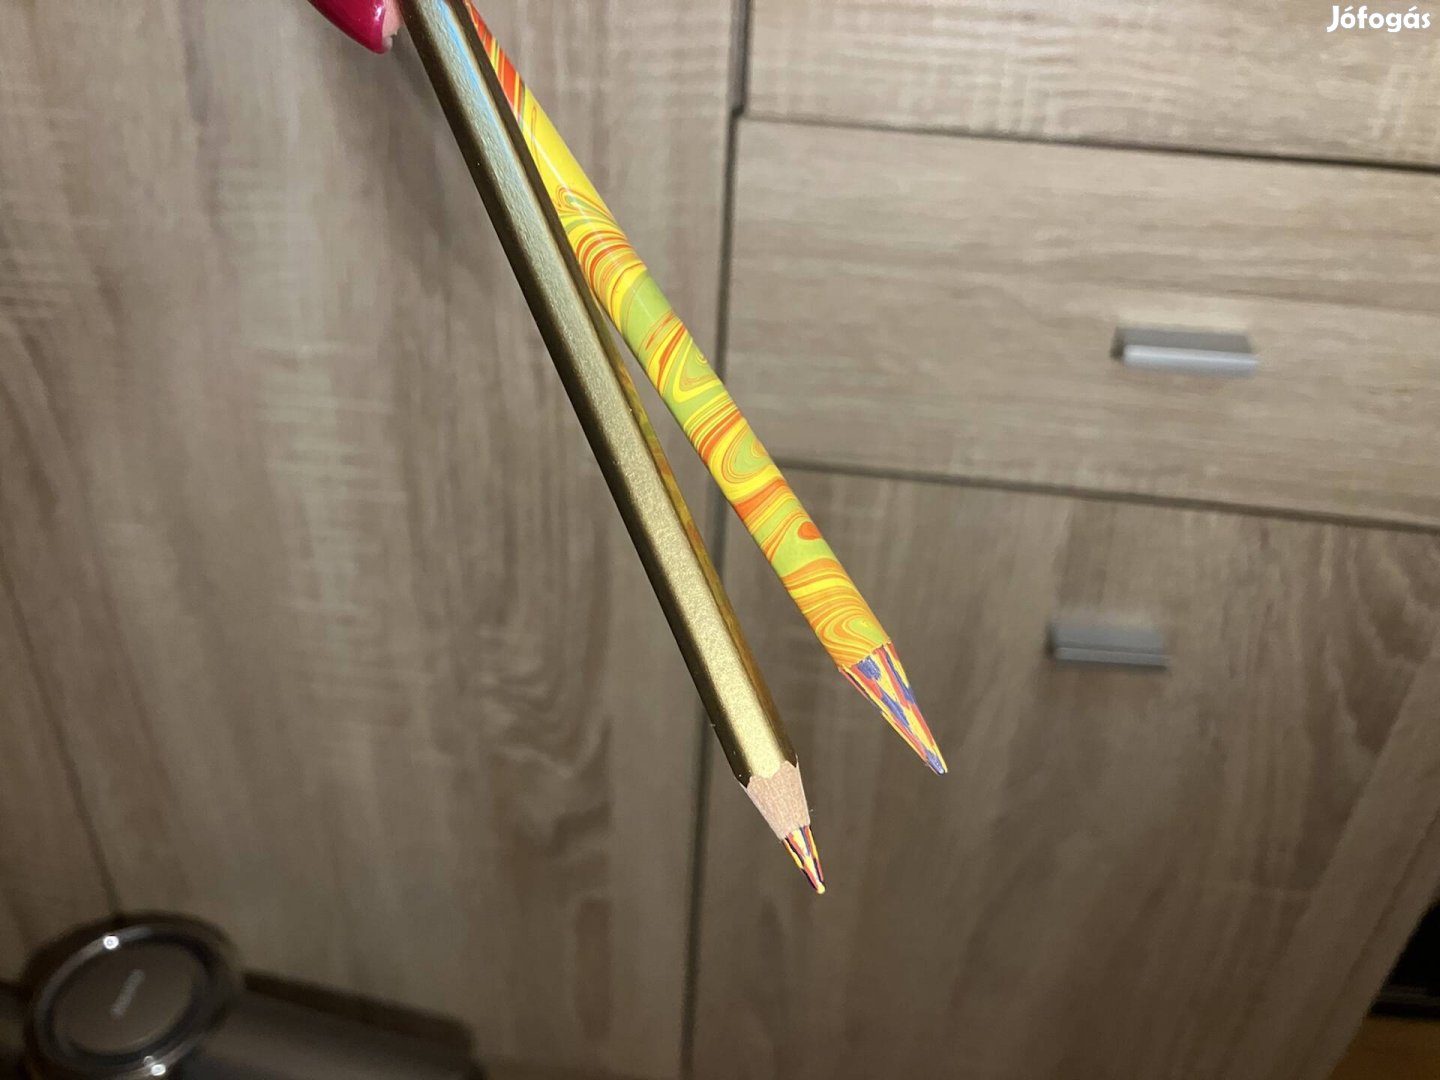 2 db Koh-I-noor ceruza